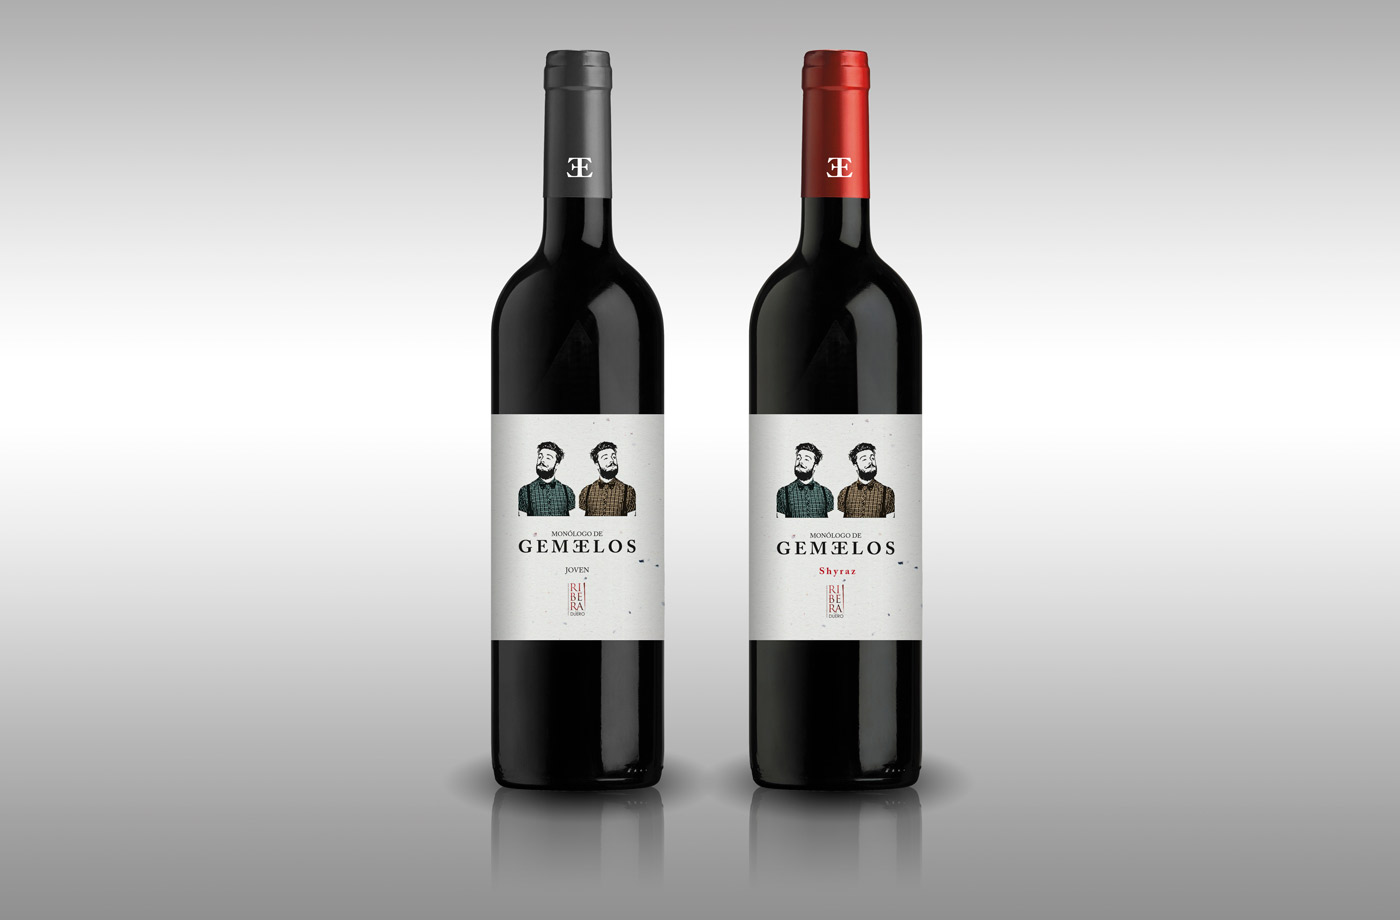 Diseño gráfico y creativo de etiquetas y packaging de vino para MONÓLOGO DE GEMELOS